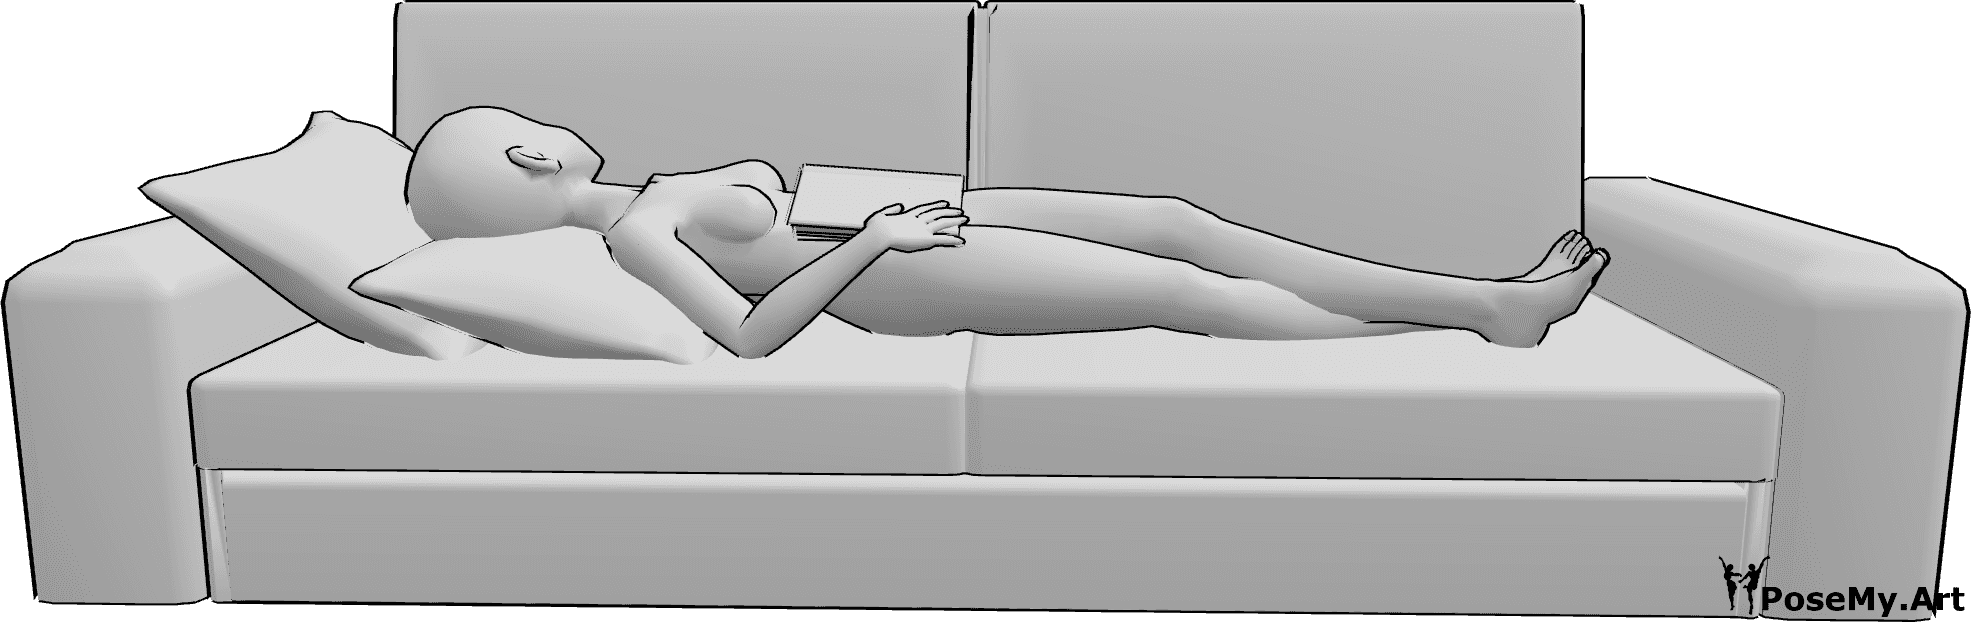 Référence des poses- Anime reading sleeping pose - Une femme animée est allongée sur le dos sur le canapé et tient un livre pendant qu'elle dort.